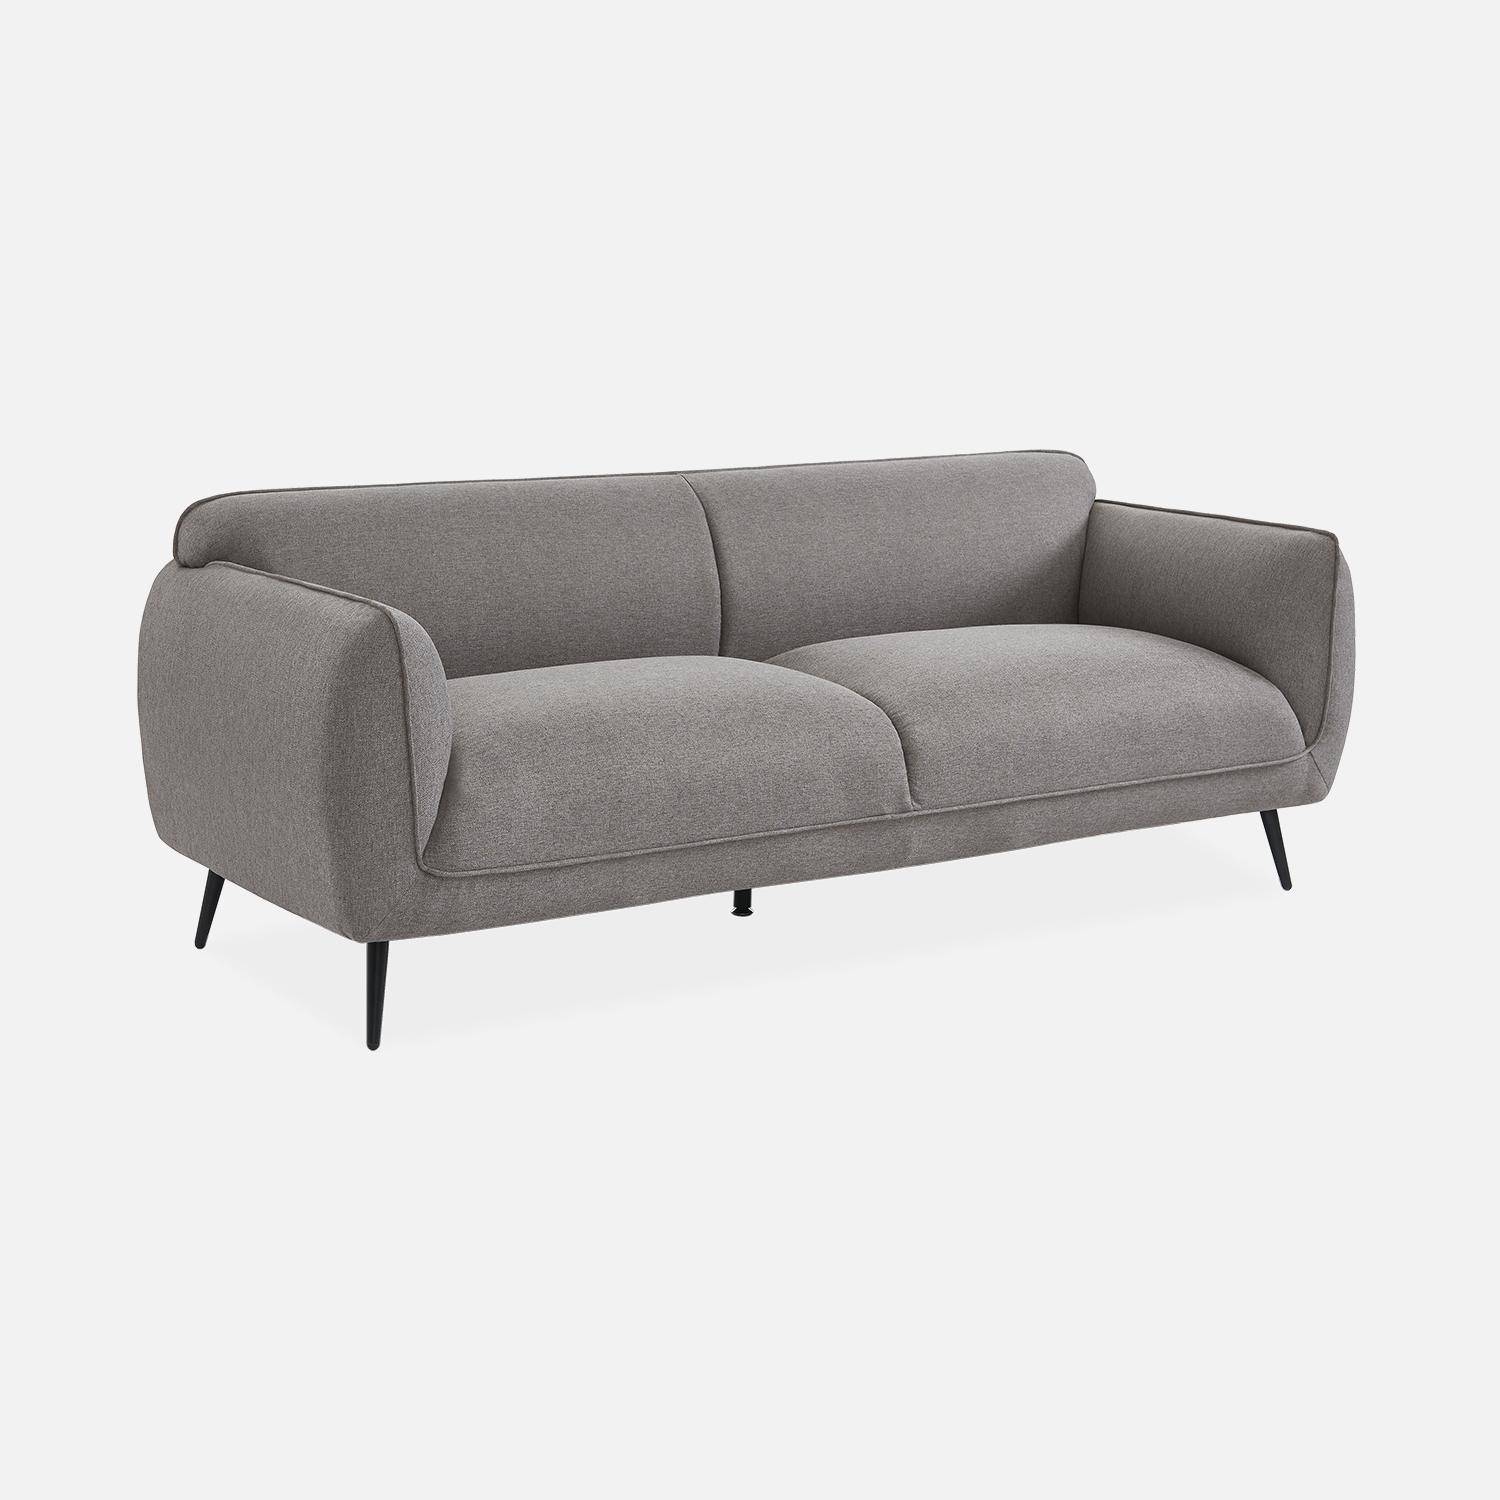 3-Sitzer-Sofa mit hellgrauem Stoffbezug und schwarzen Metallfüßen - Soft,sweeek,Photo3